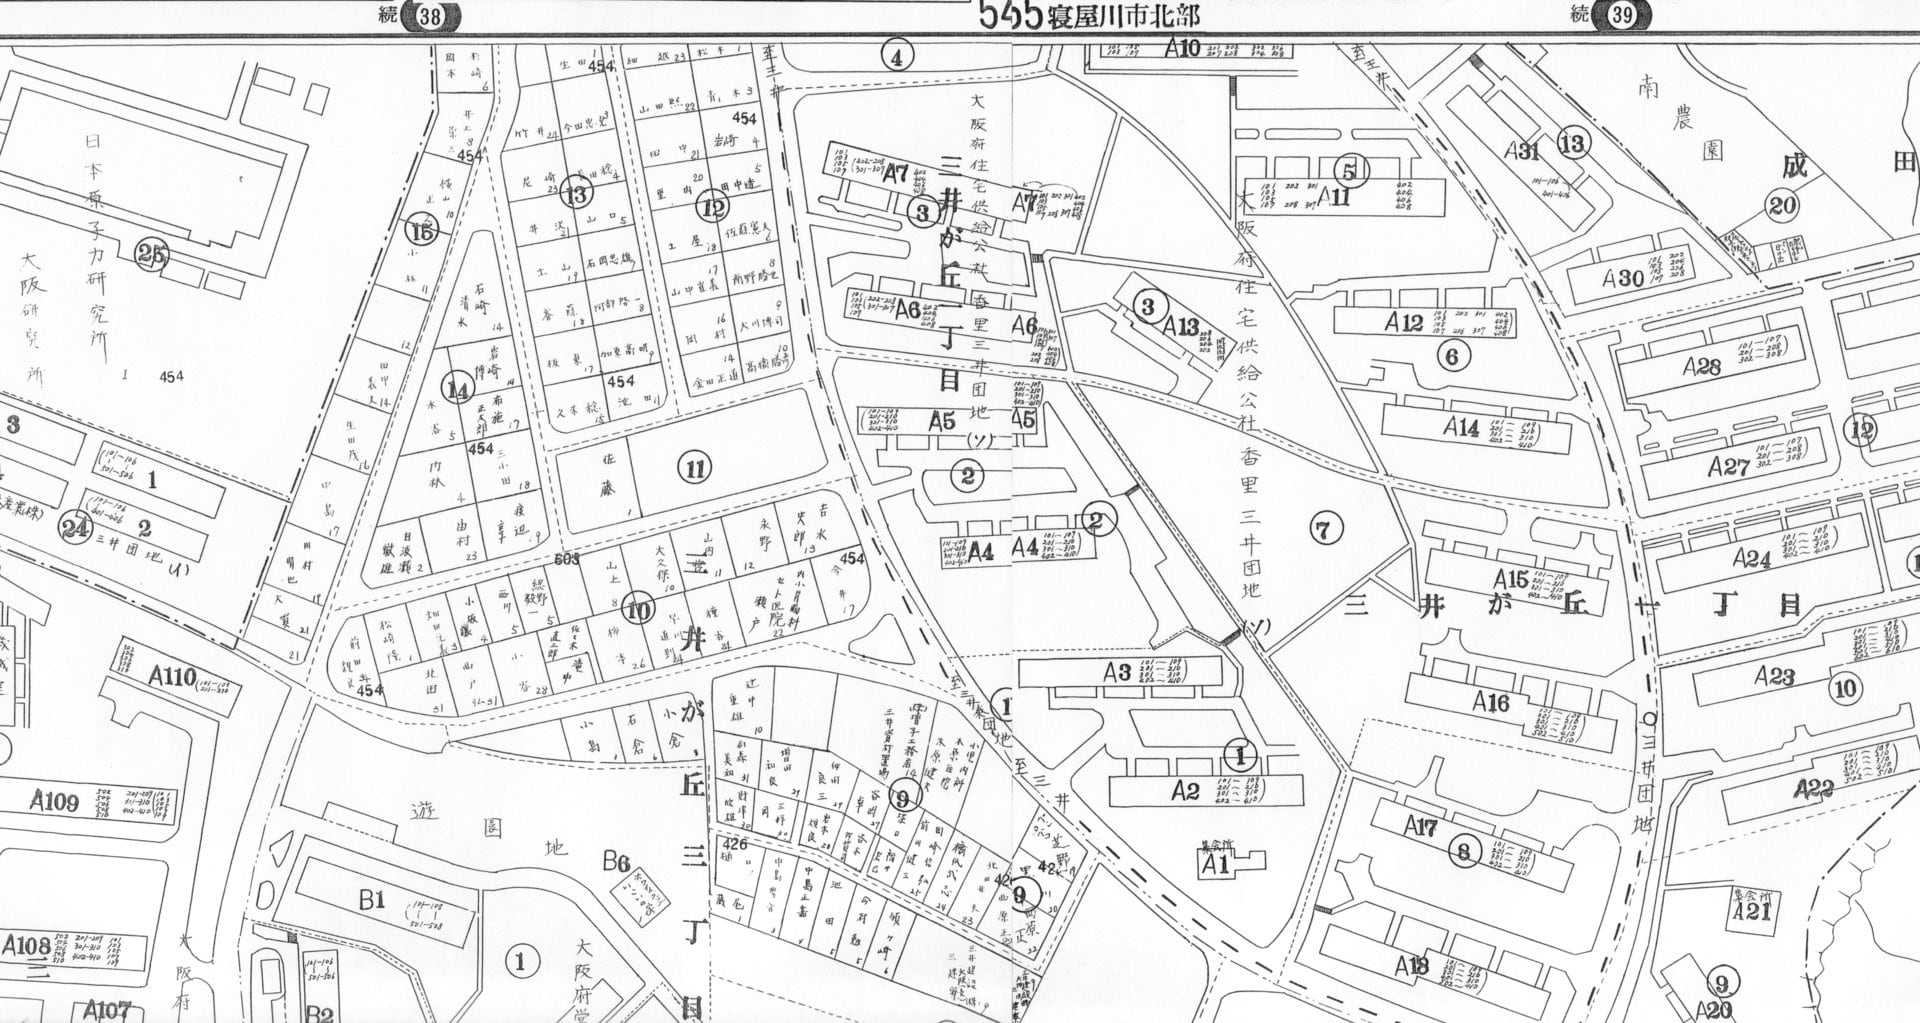 ゼンリン地図寝屋川市 参考書 | red-village.com